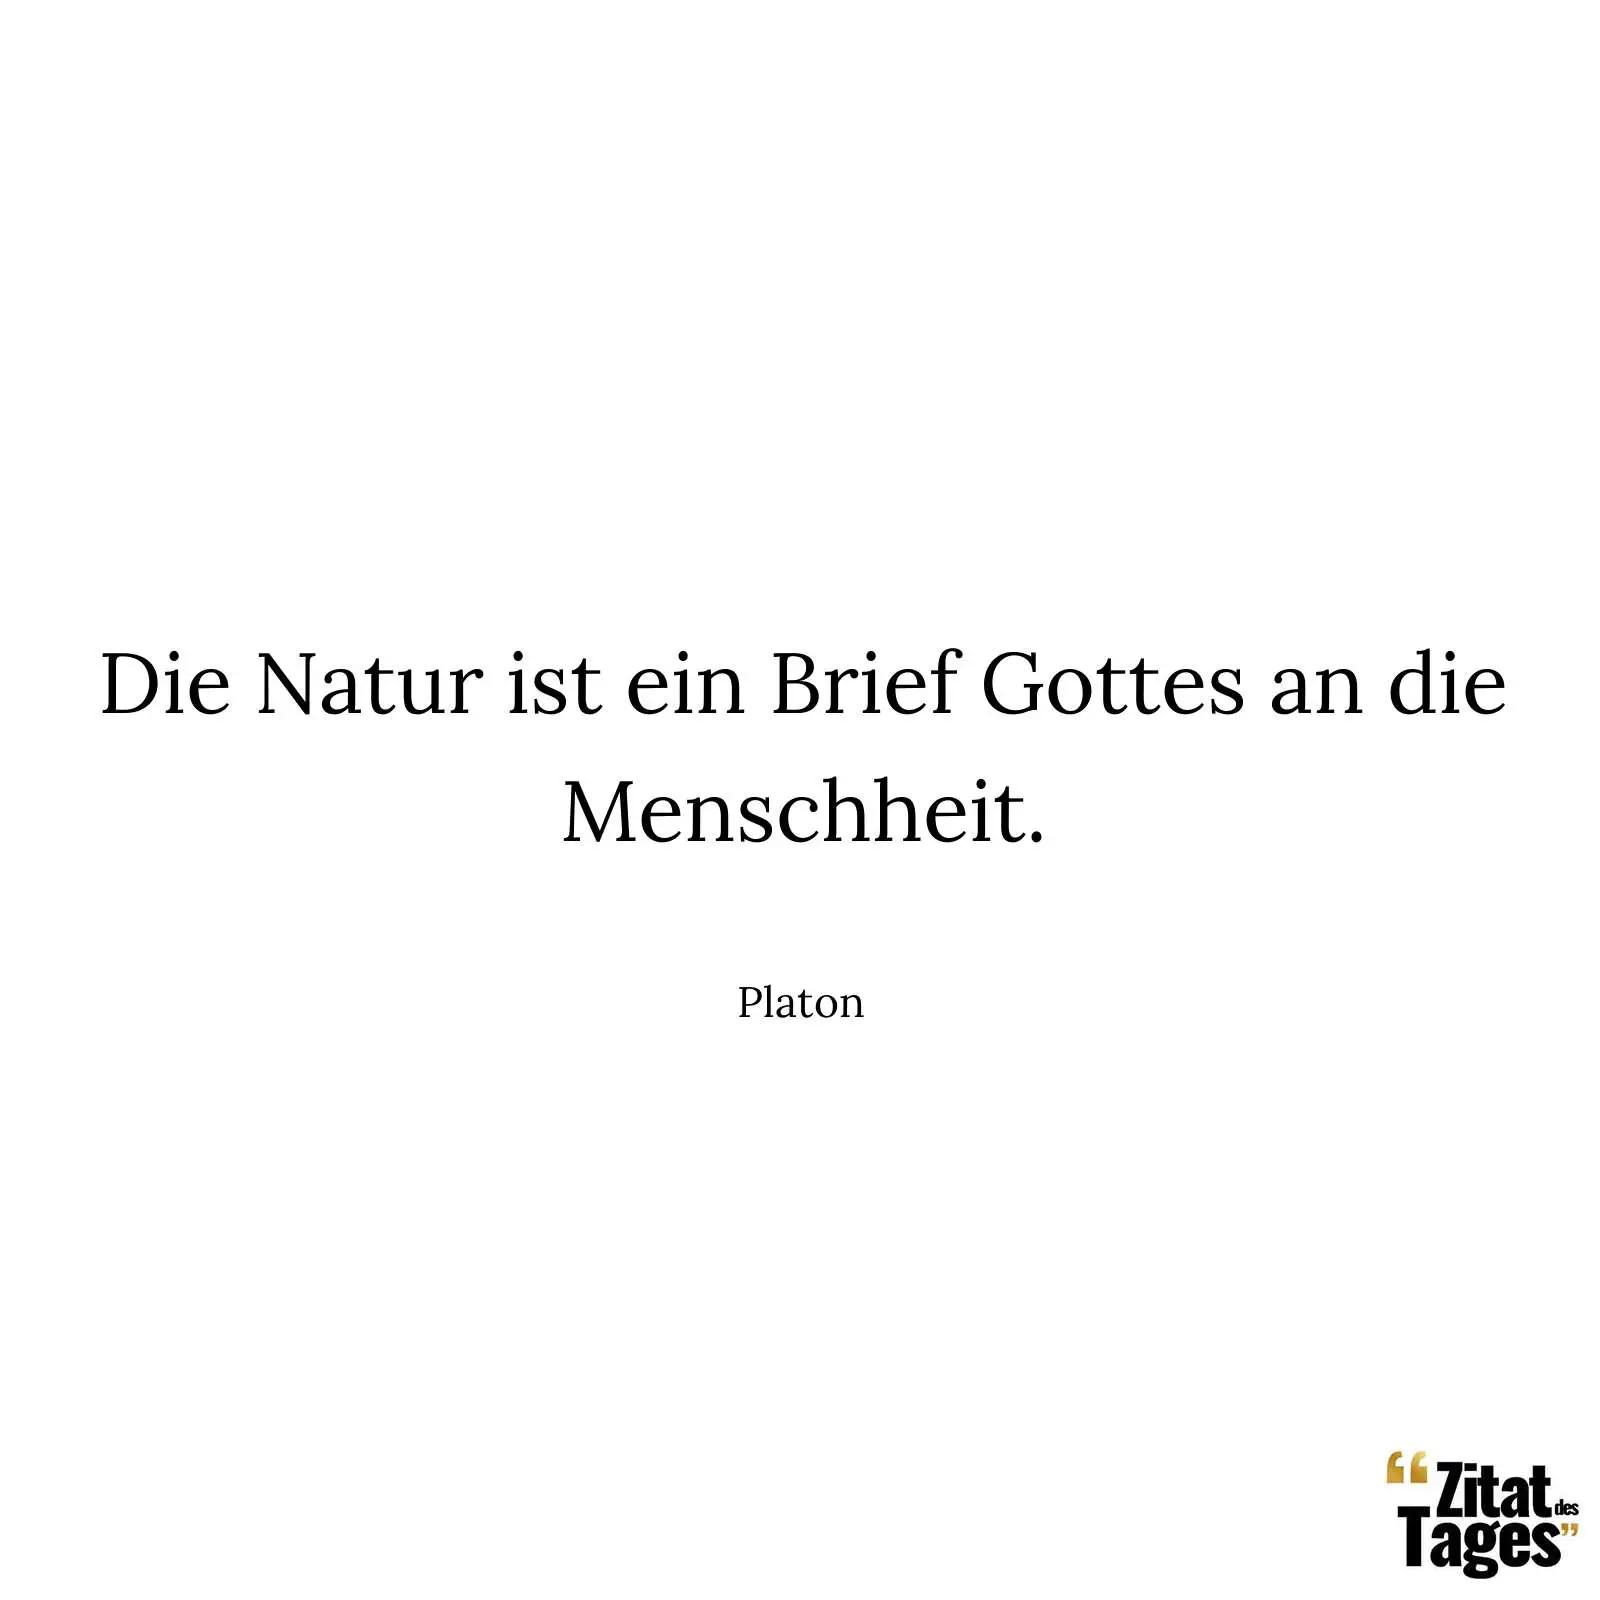 Die Natur ist ein Brief Gottes an die Menschheit. - Platon